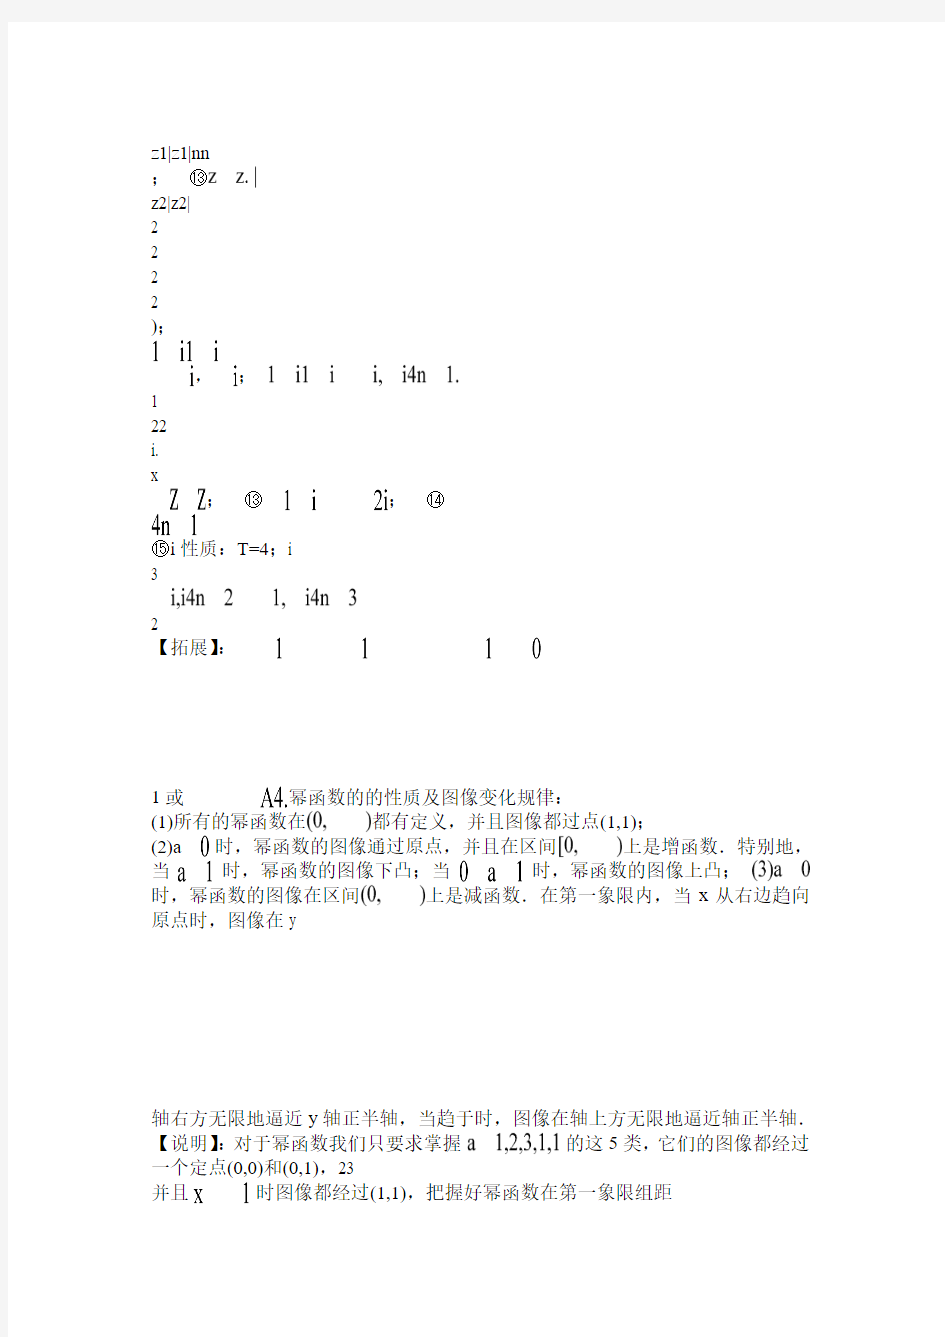 江苏省高考数学复习知识点按难度与题型归纳(数学应试笔记)